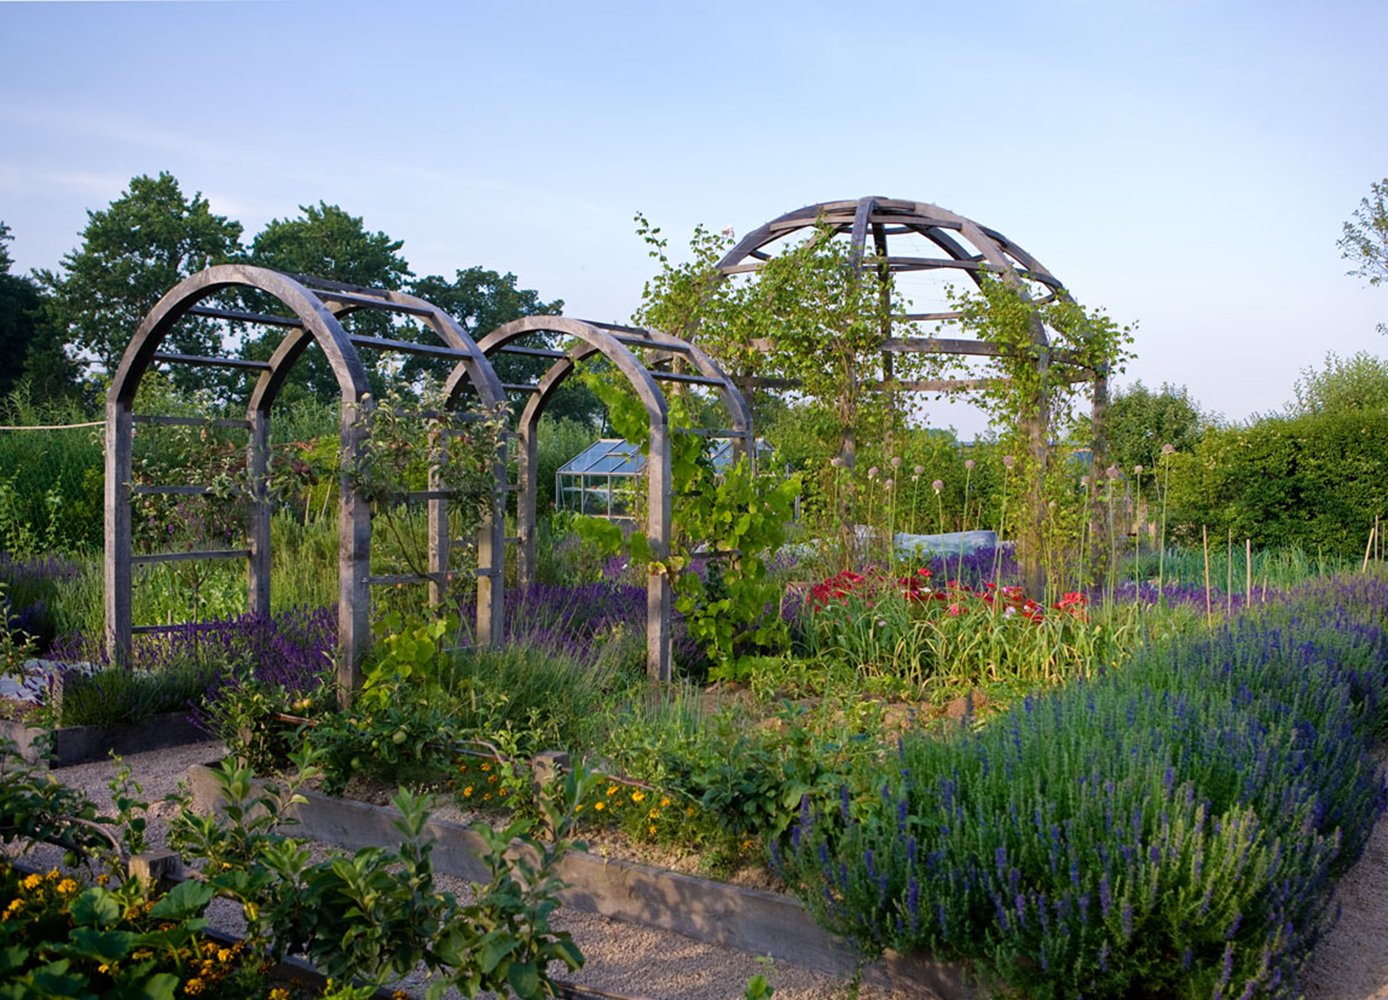 Jane_Brown_Landscape_Architect_Garden_Design_Old_Rectory_West_Sussex_Vegetable_Garden_Wild_Flower_Meadow1.jpg